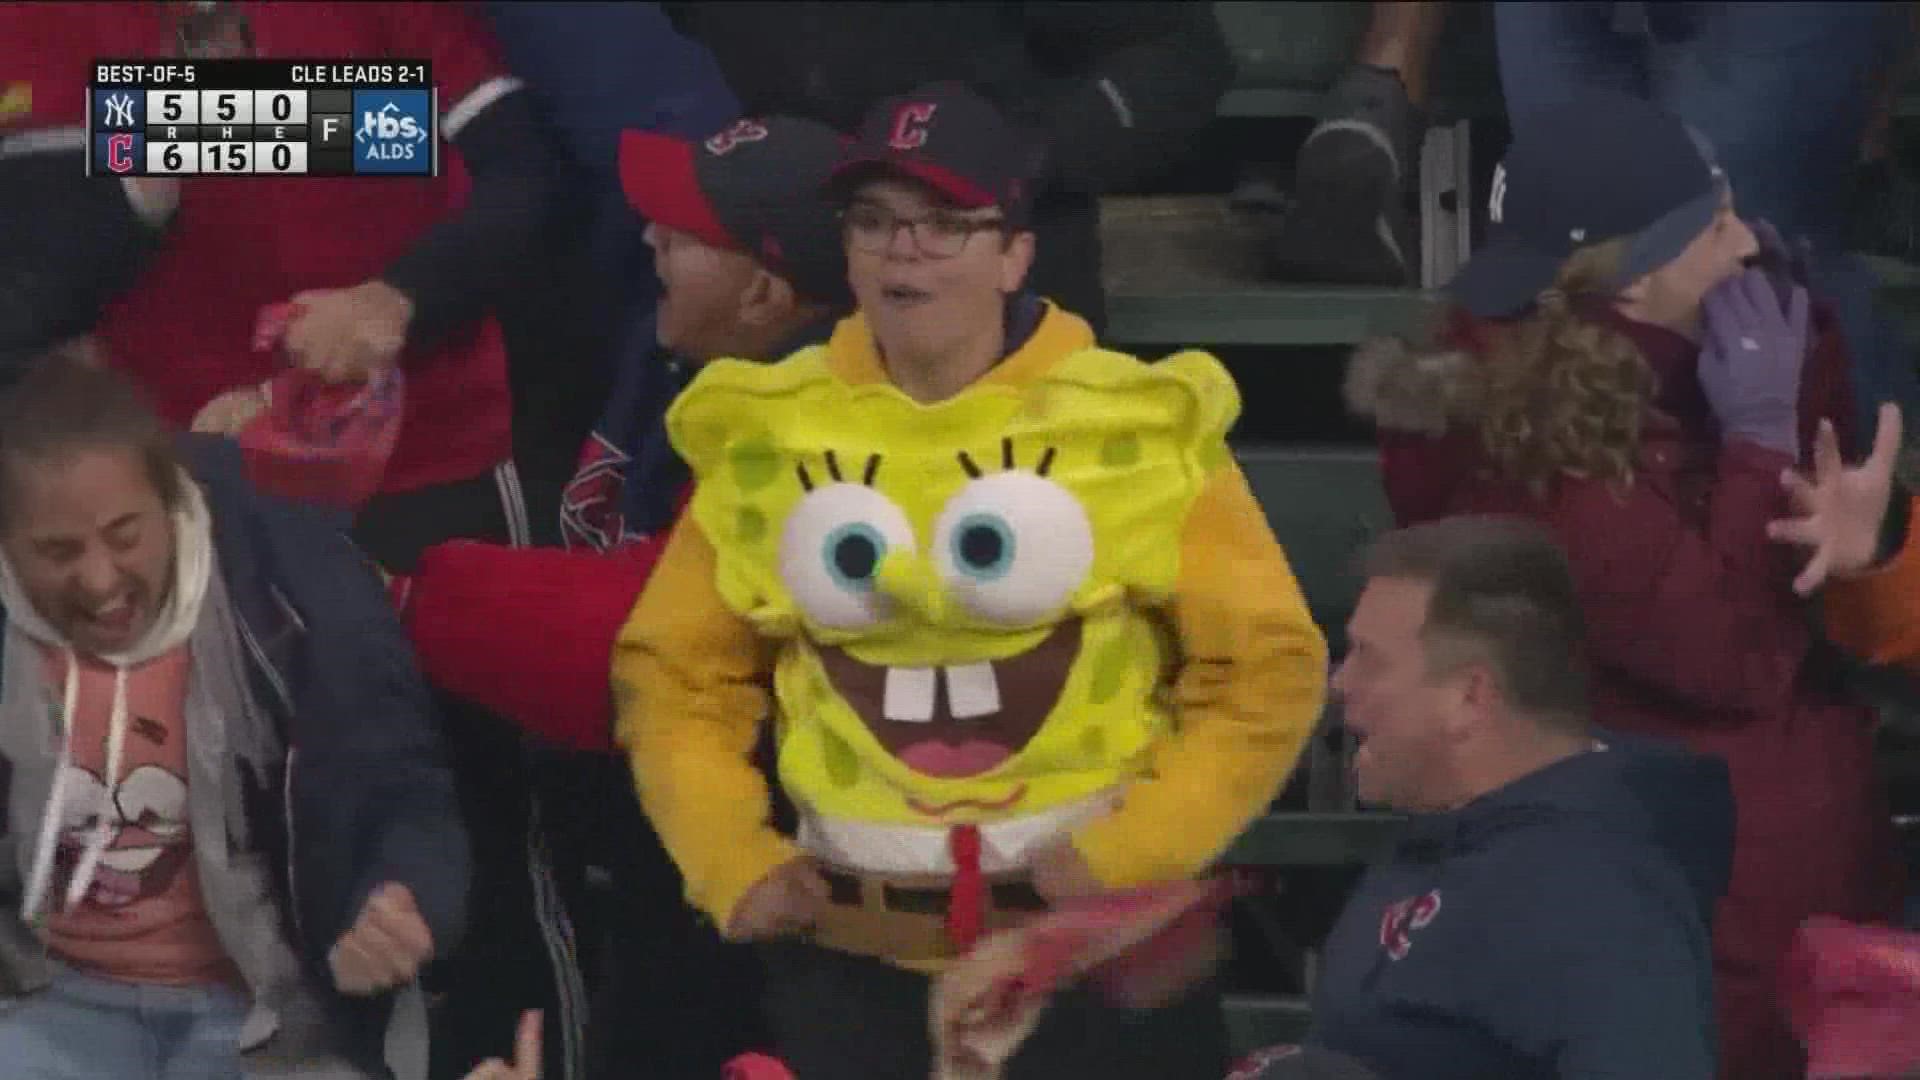 Feast your eyes on these amazing 'Spongebob Squarepants' hockey jerseys 